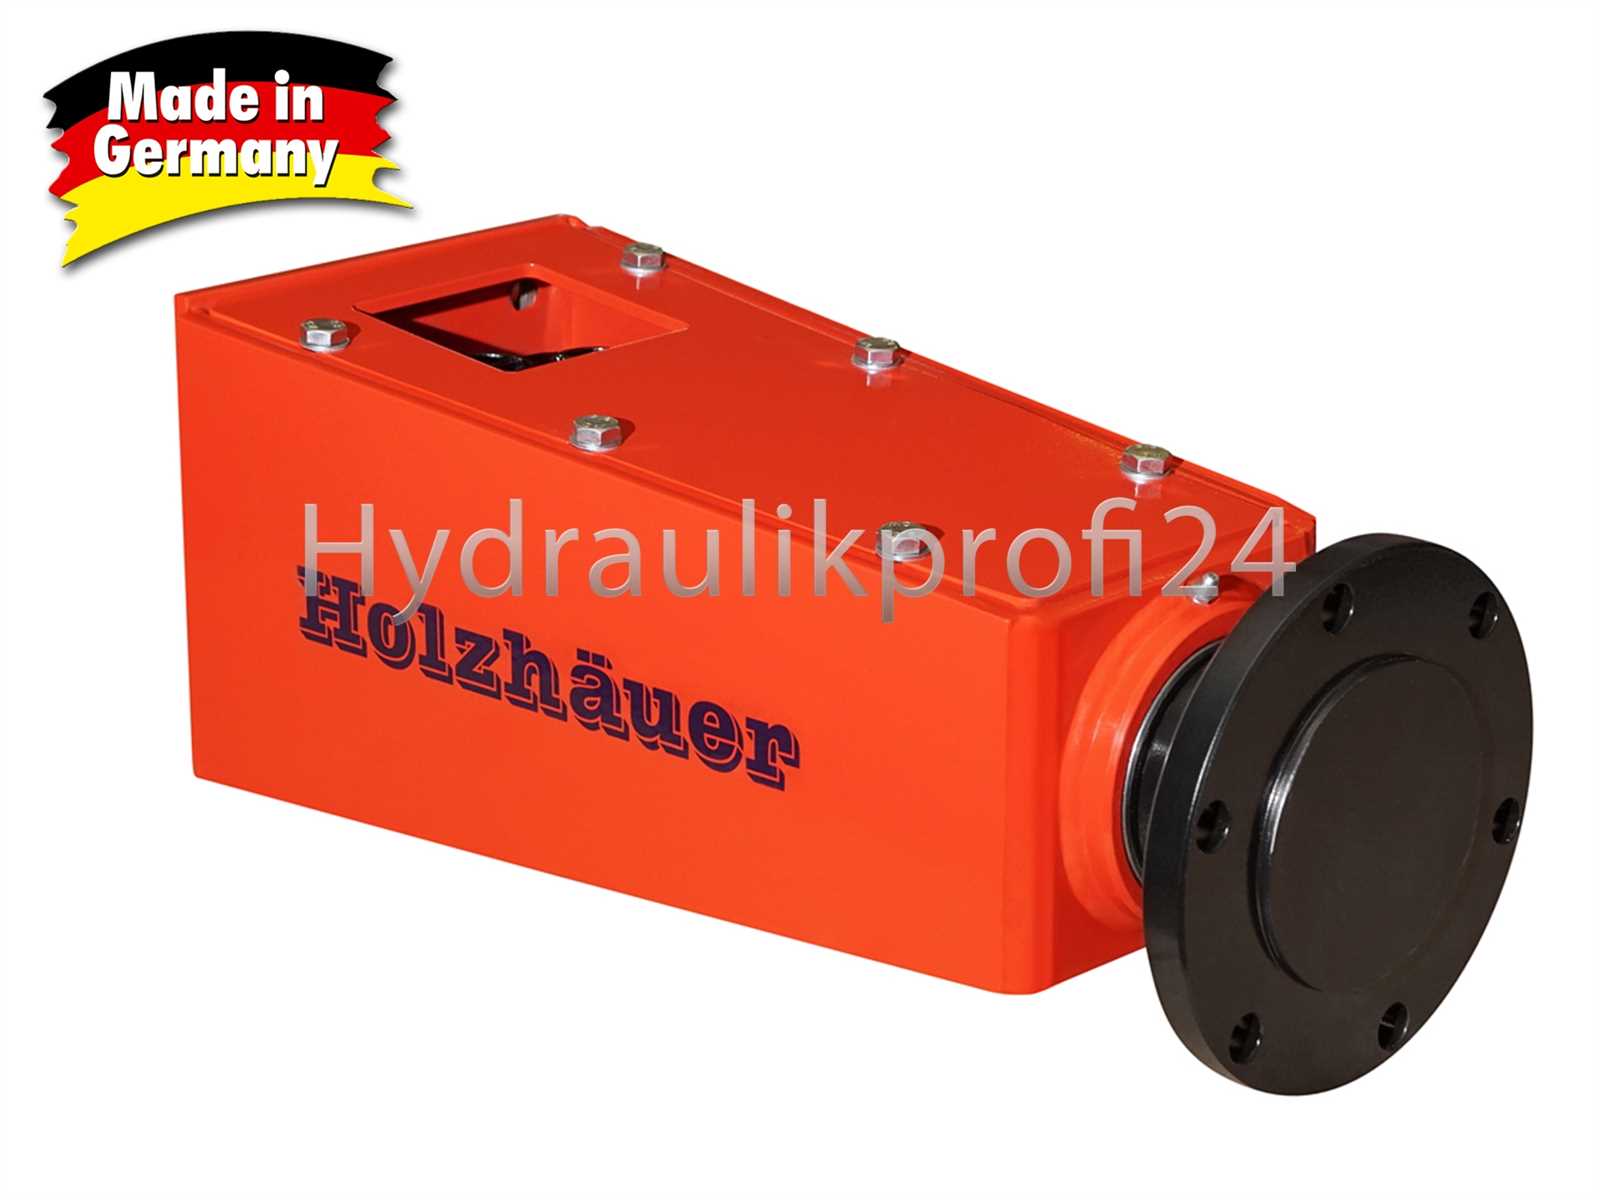 Hydraulikprofi24 - Baggerspalter mit Austauschspitze Ø200mm 400mm lang mit  MS01 + Motor OMT500